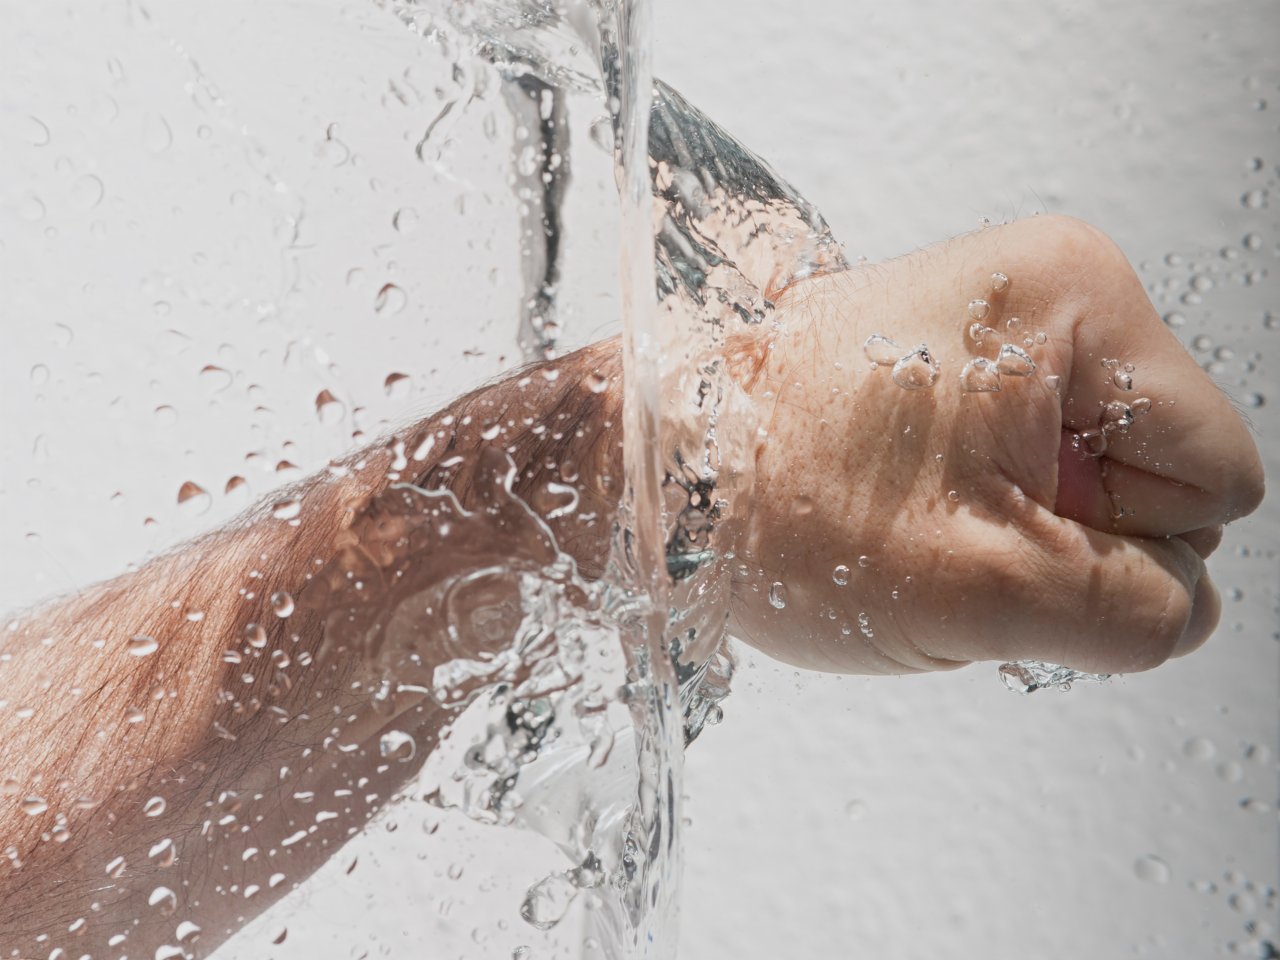 Auch Hände waschen hilft dir nicht, wenn du dein kontaminiertes Handy danach wieder anfässt.